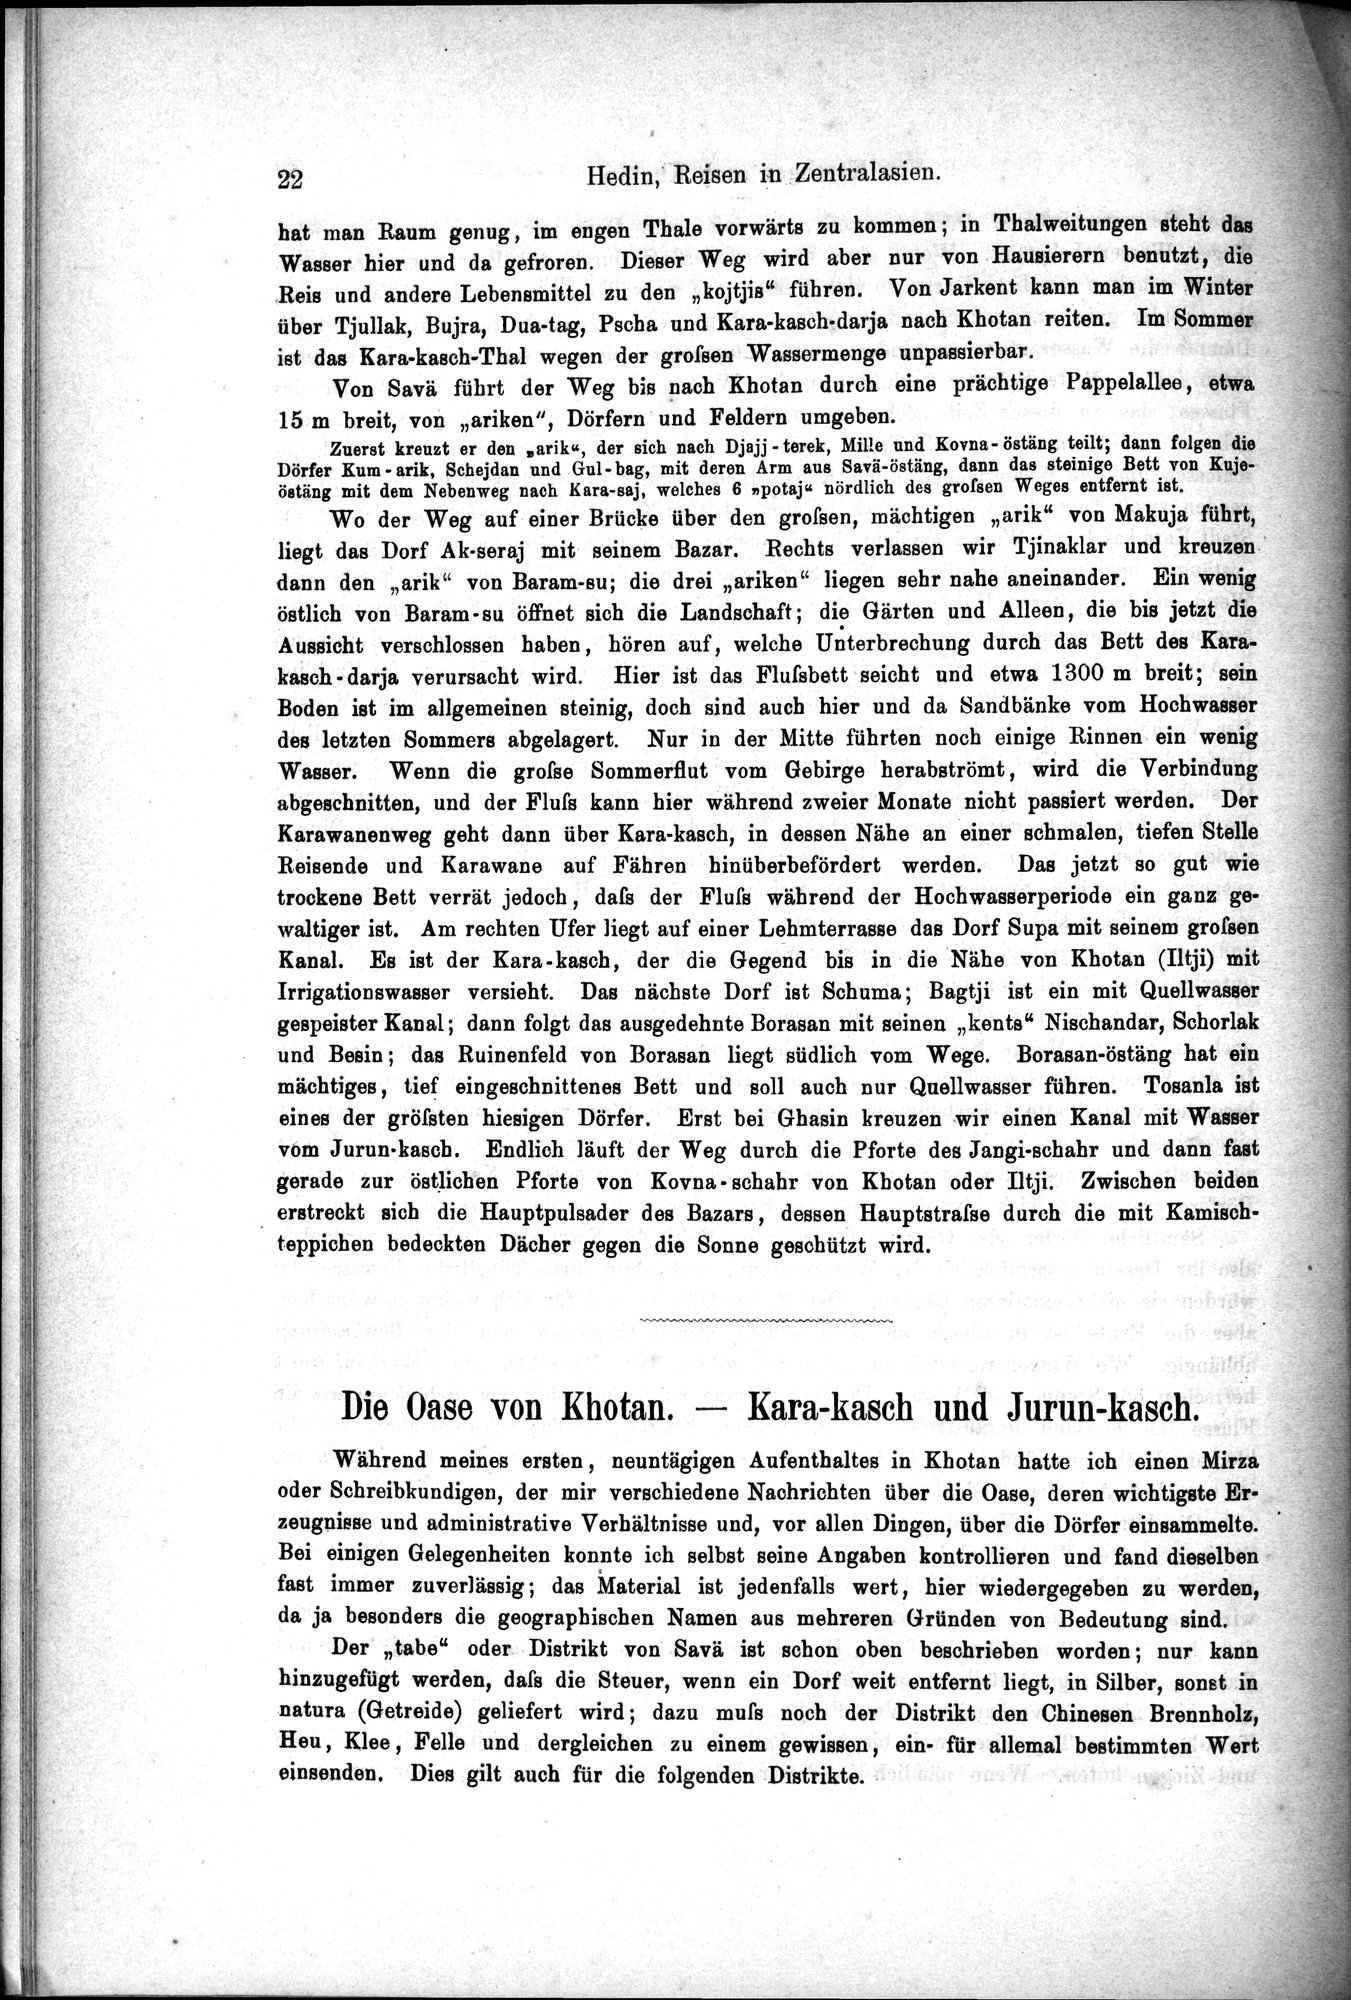 Die Geographische-Wissenschaftlichen Ergebnisse meiner Reisen in Zentralasien, 1894-1897 : vol.1 / Page 34 (Grayscale High Resolution Image)